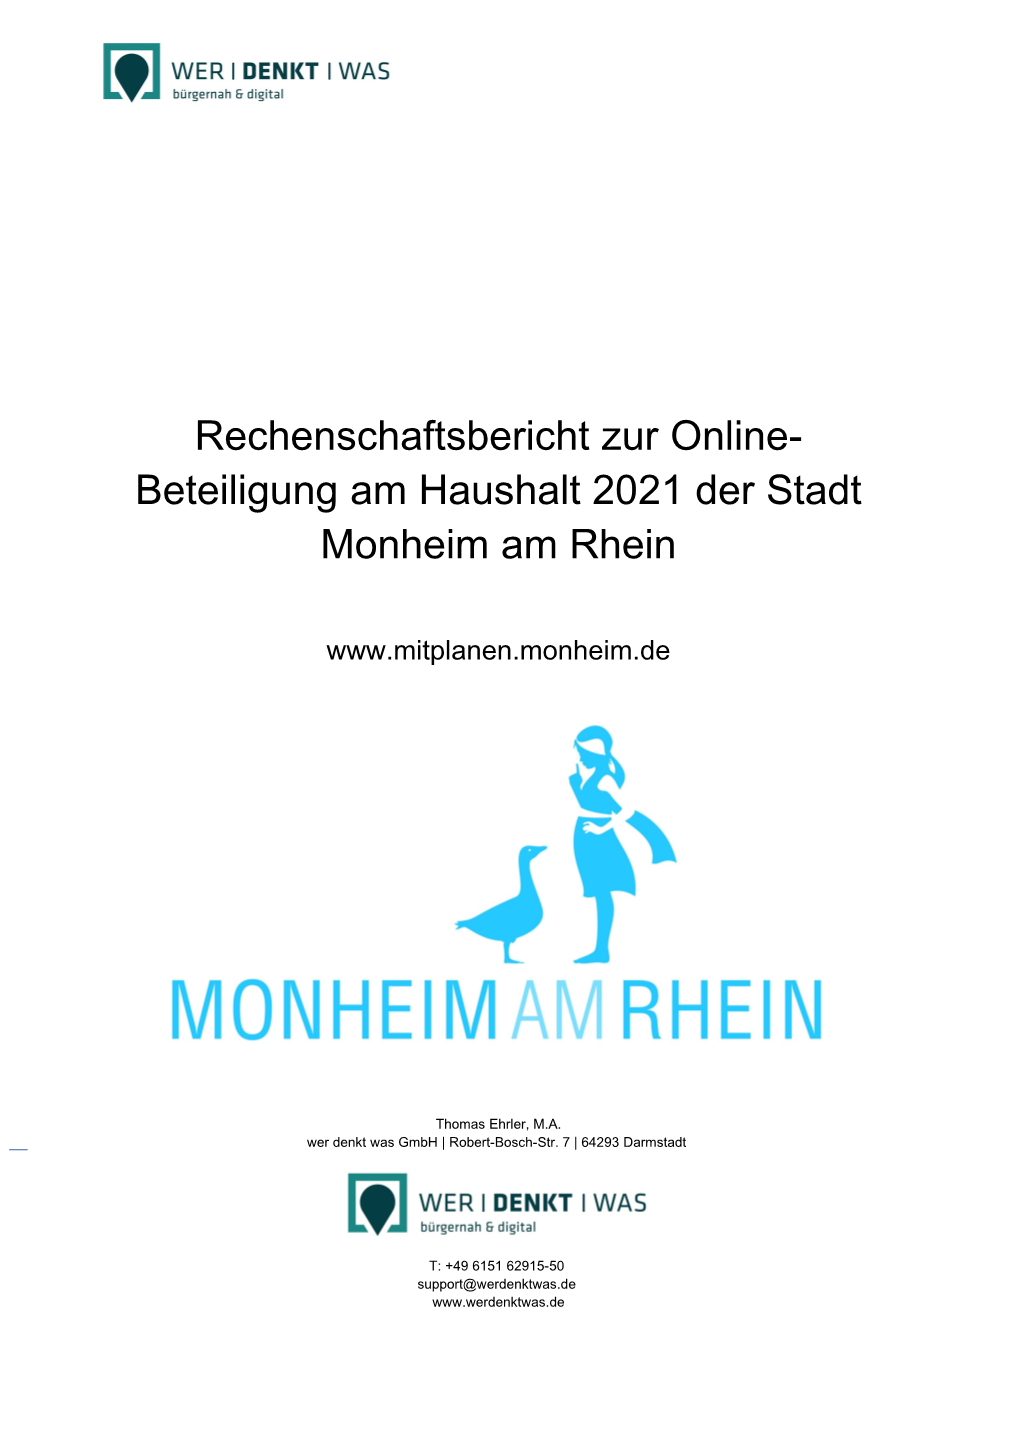 Rechenschaftsbericht Zur Online- Beteiligung Am Haushalt 2021 Der Stadt Monheim Am Rhein